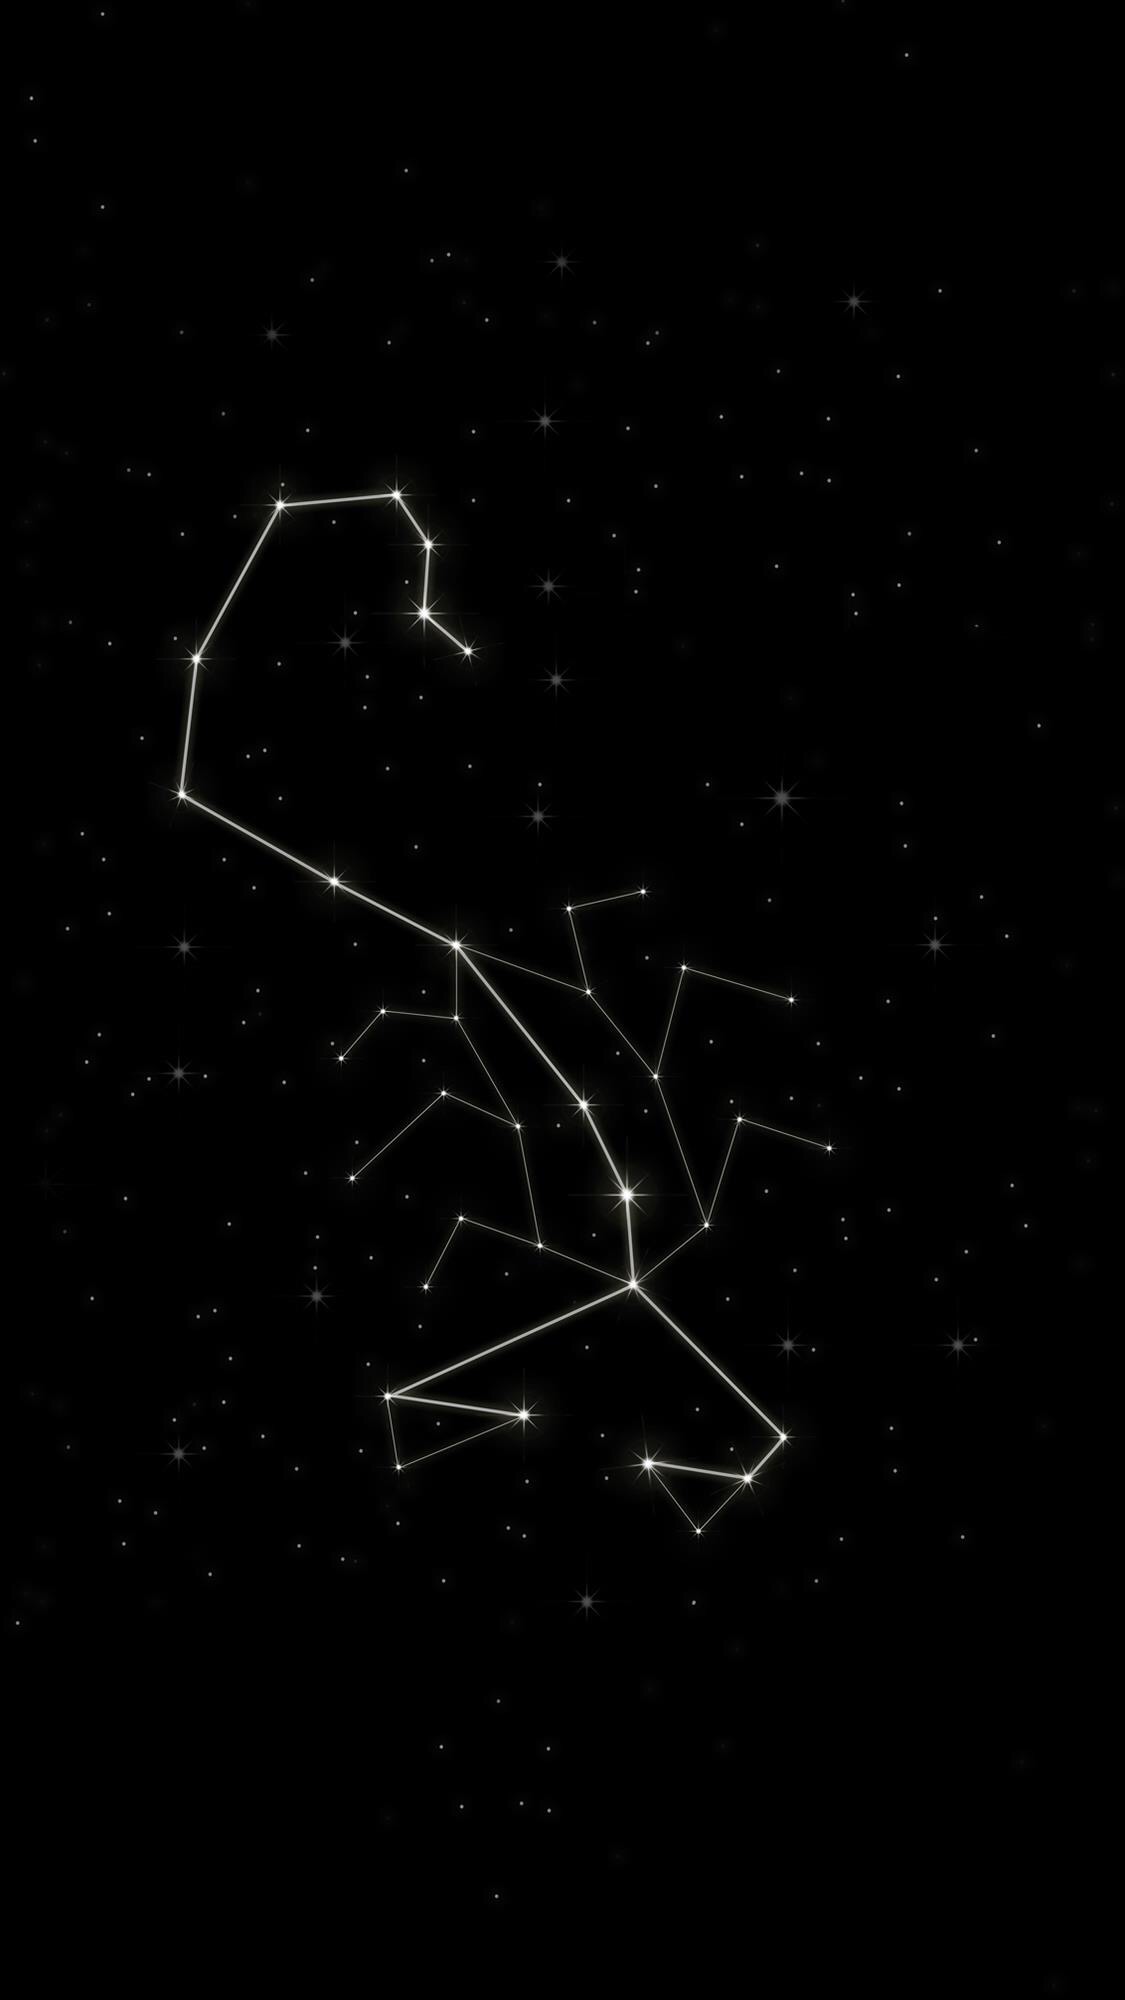 天蝎座图案样式图片